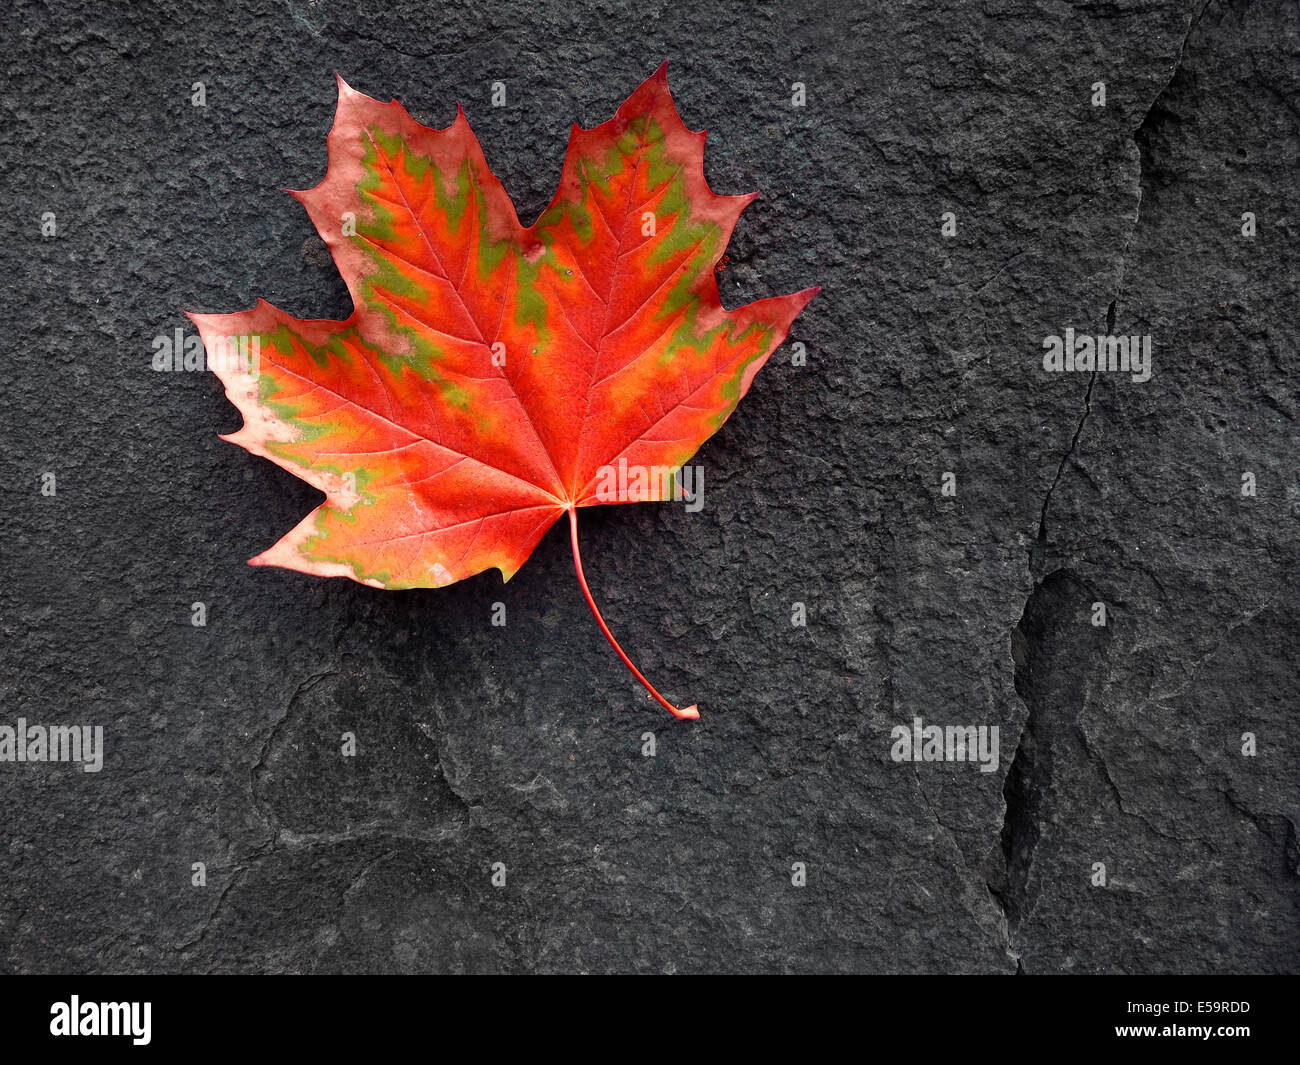 Dettaglio della red autumn fall maple leaf su una roccia nera Foto Stock